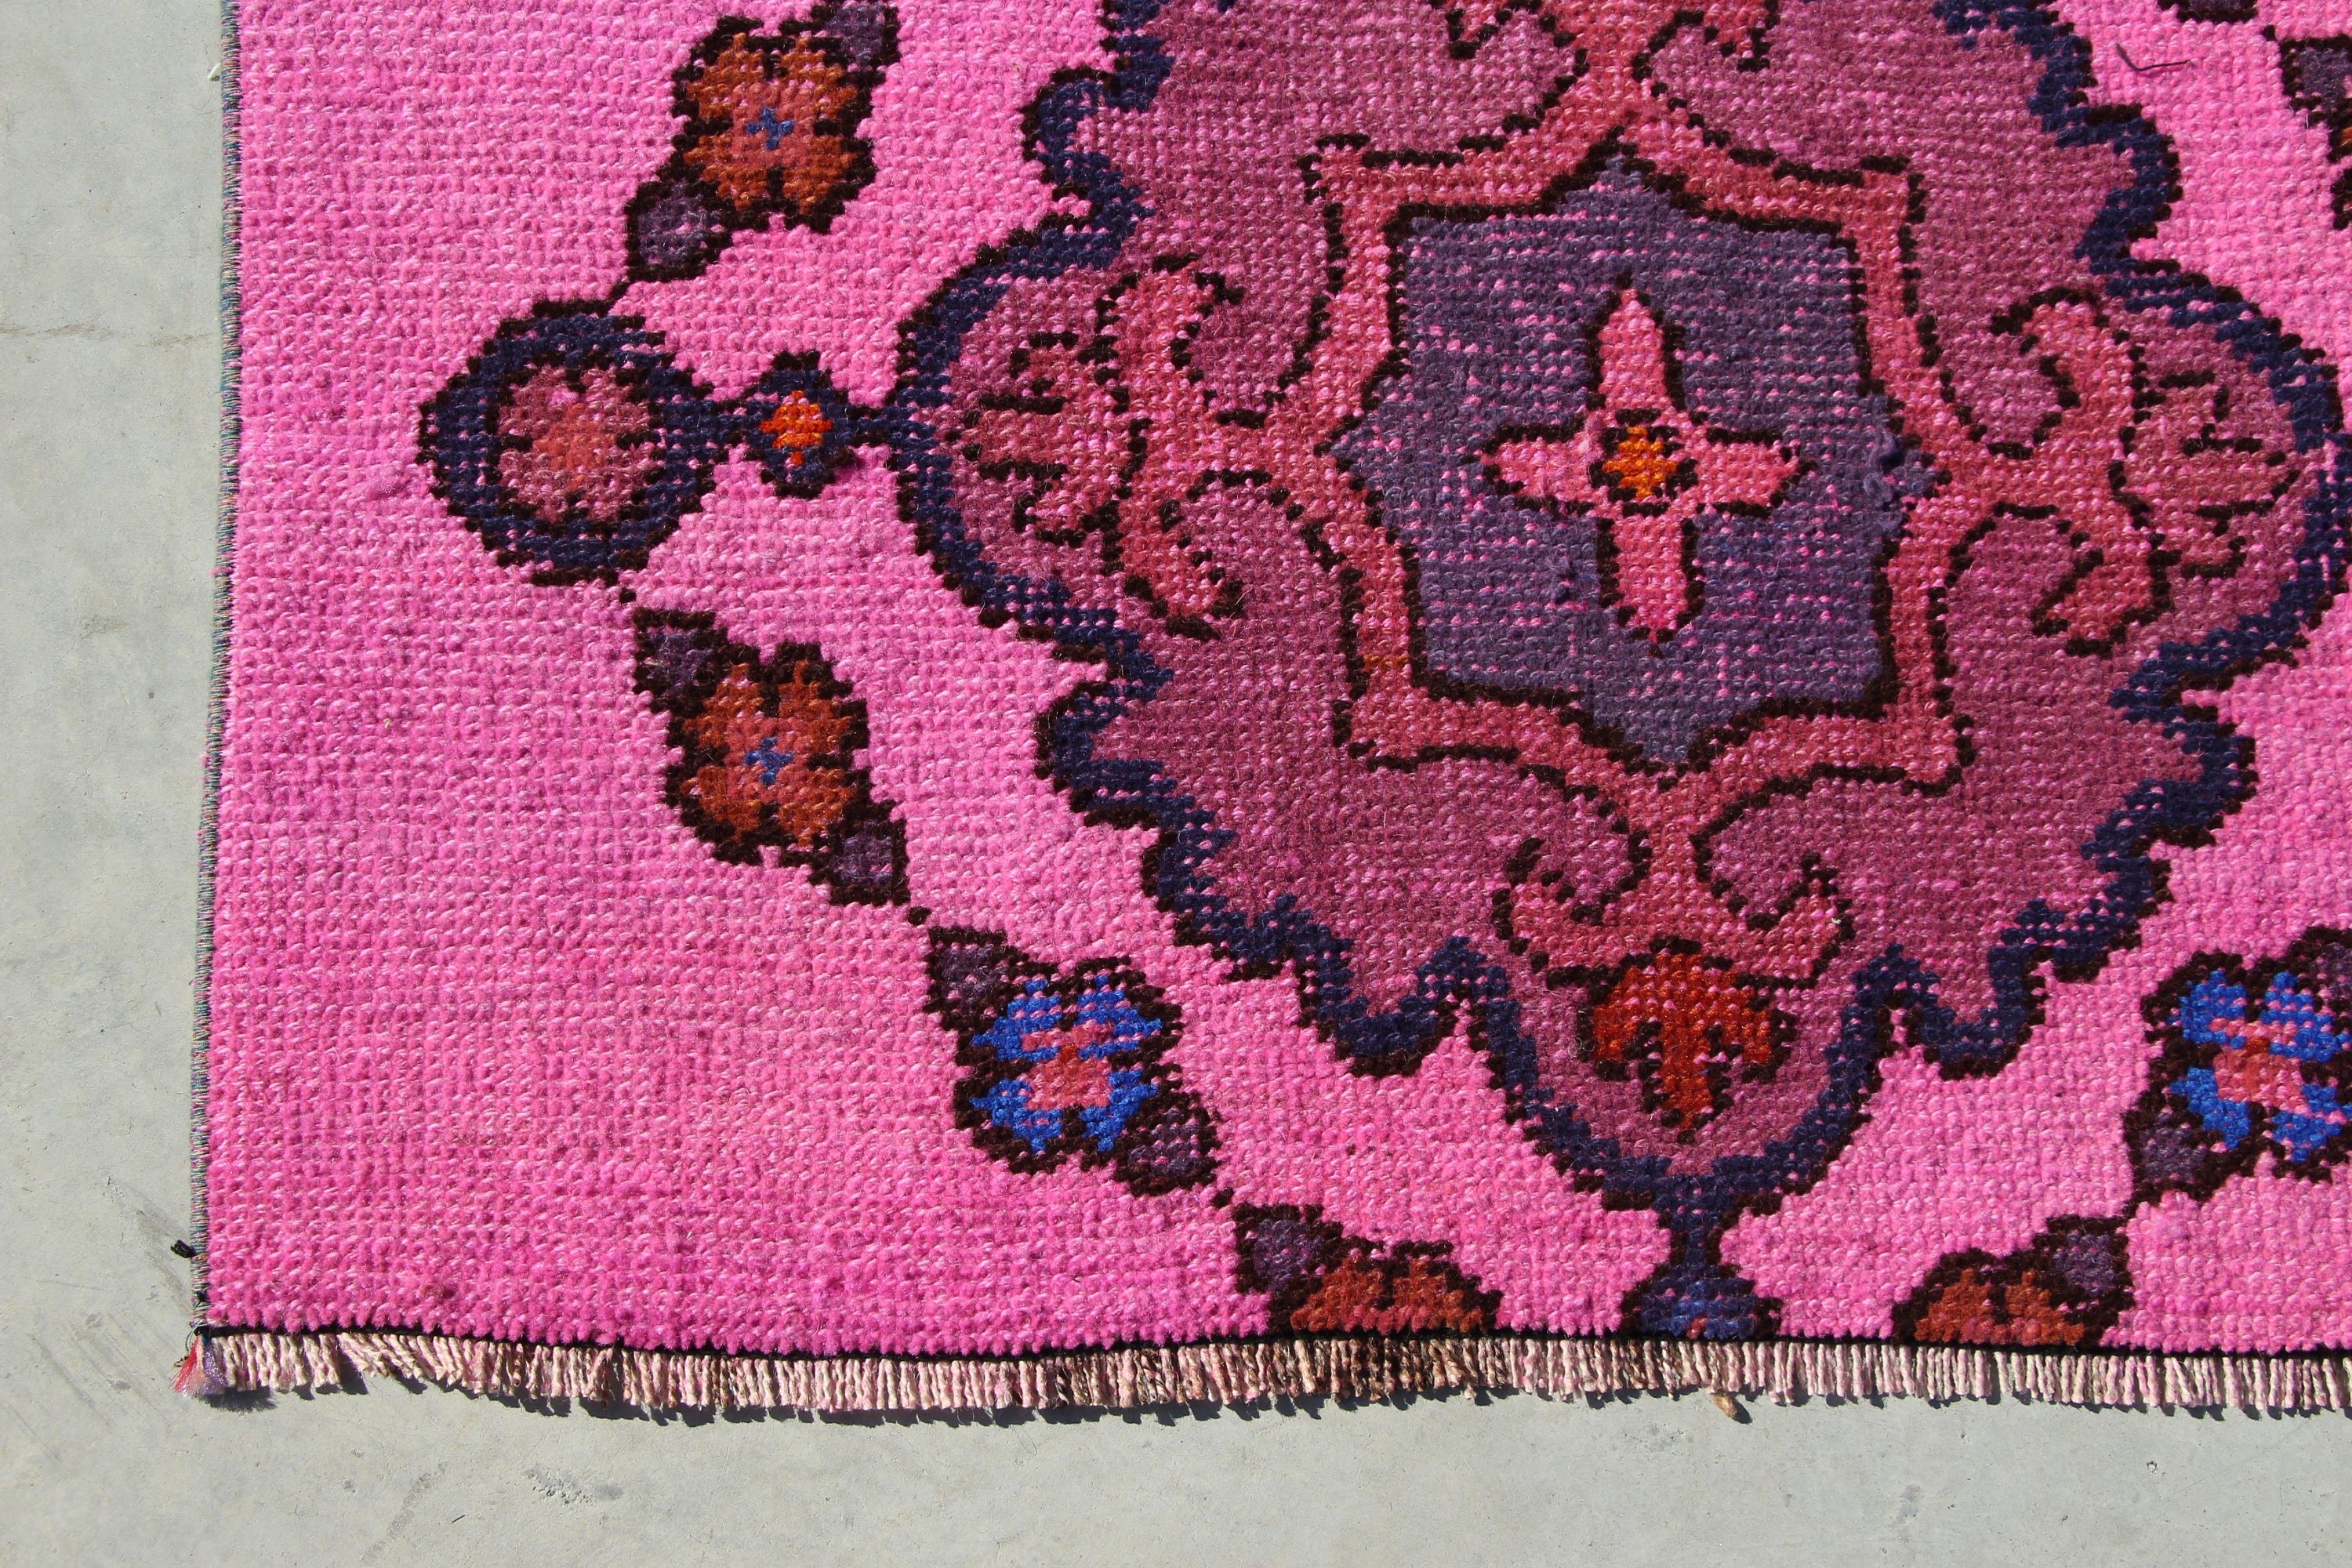 Bedroom Rug, Kitchen Rug, Turkish Rugs, Floor Rugs, Nursery Rug, 3x7.3 ft Accent Rugs, Vintage Rug, Pink Moroccan Rugs, Rugs for Bedroom